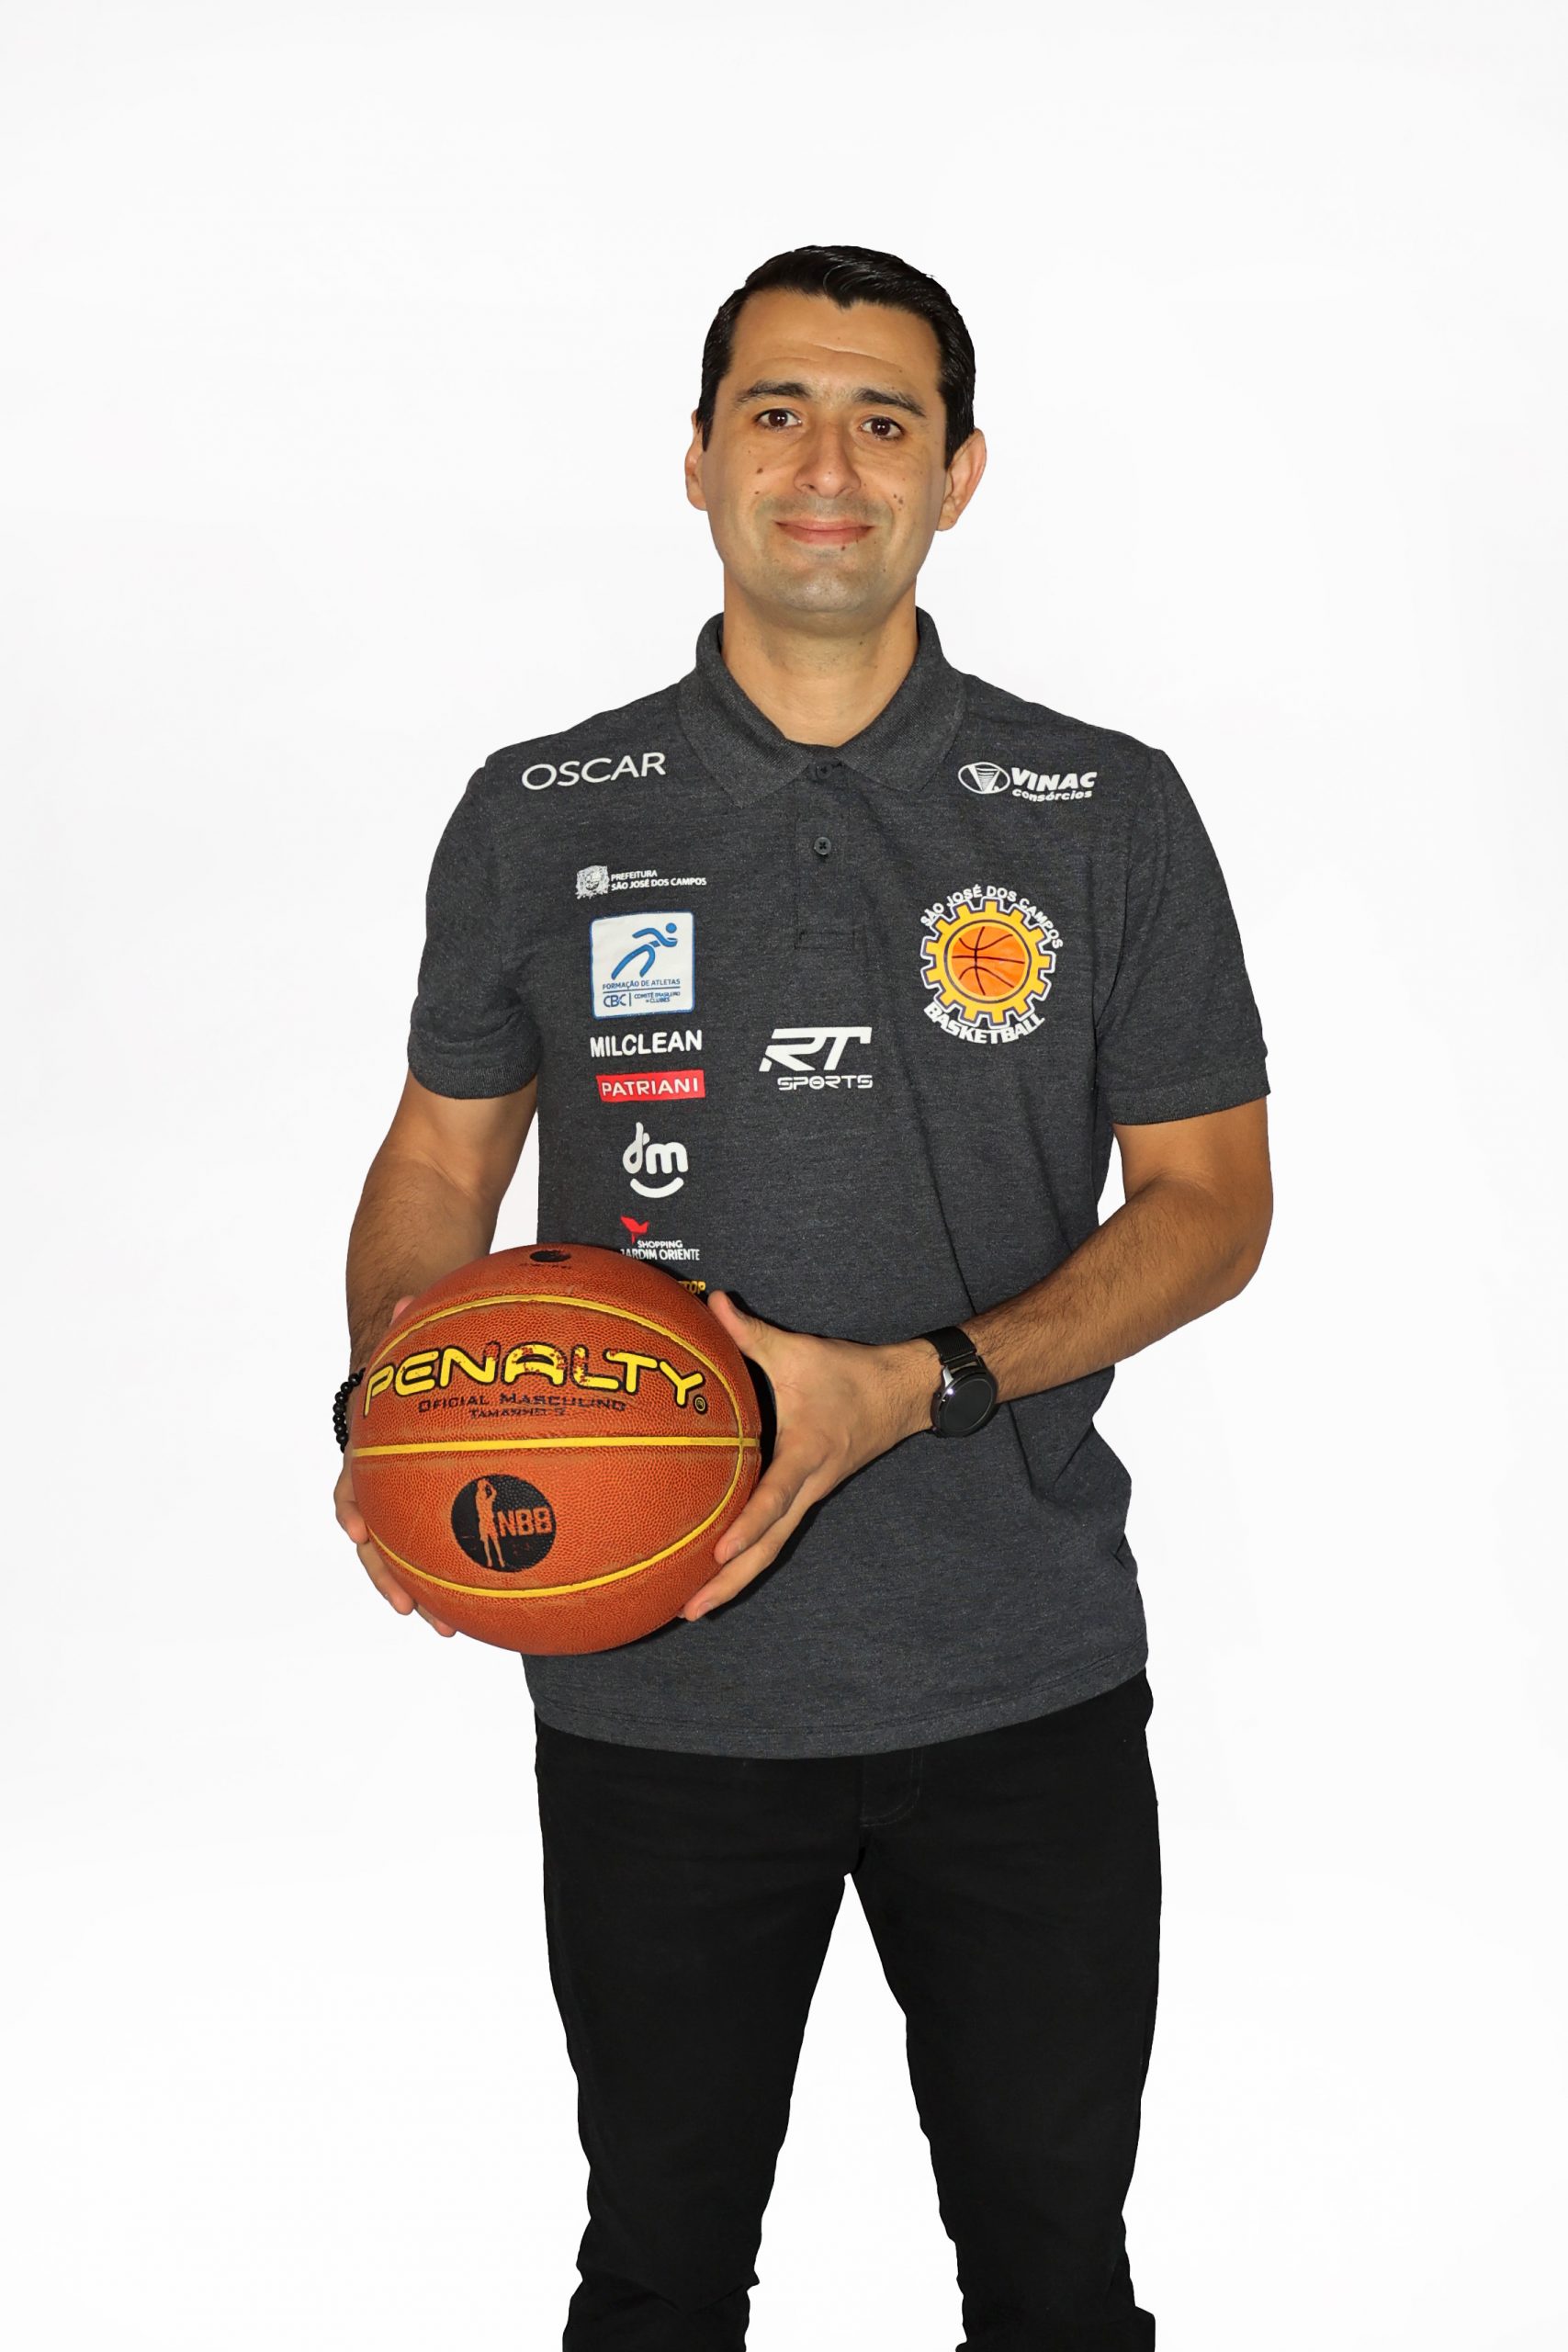 São José basketball é campeão da Copa São Paulo - CBN Vale do